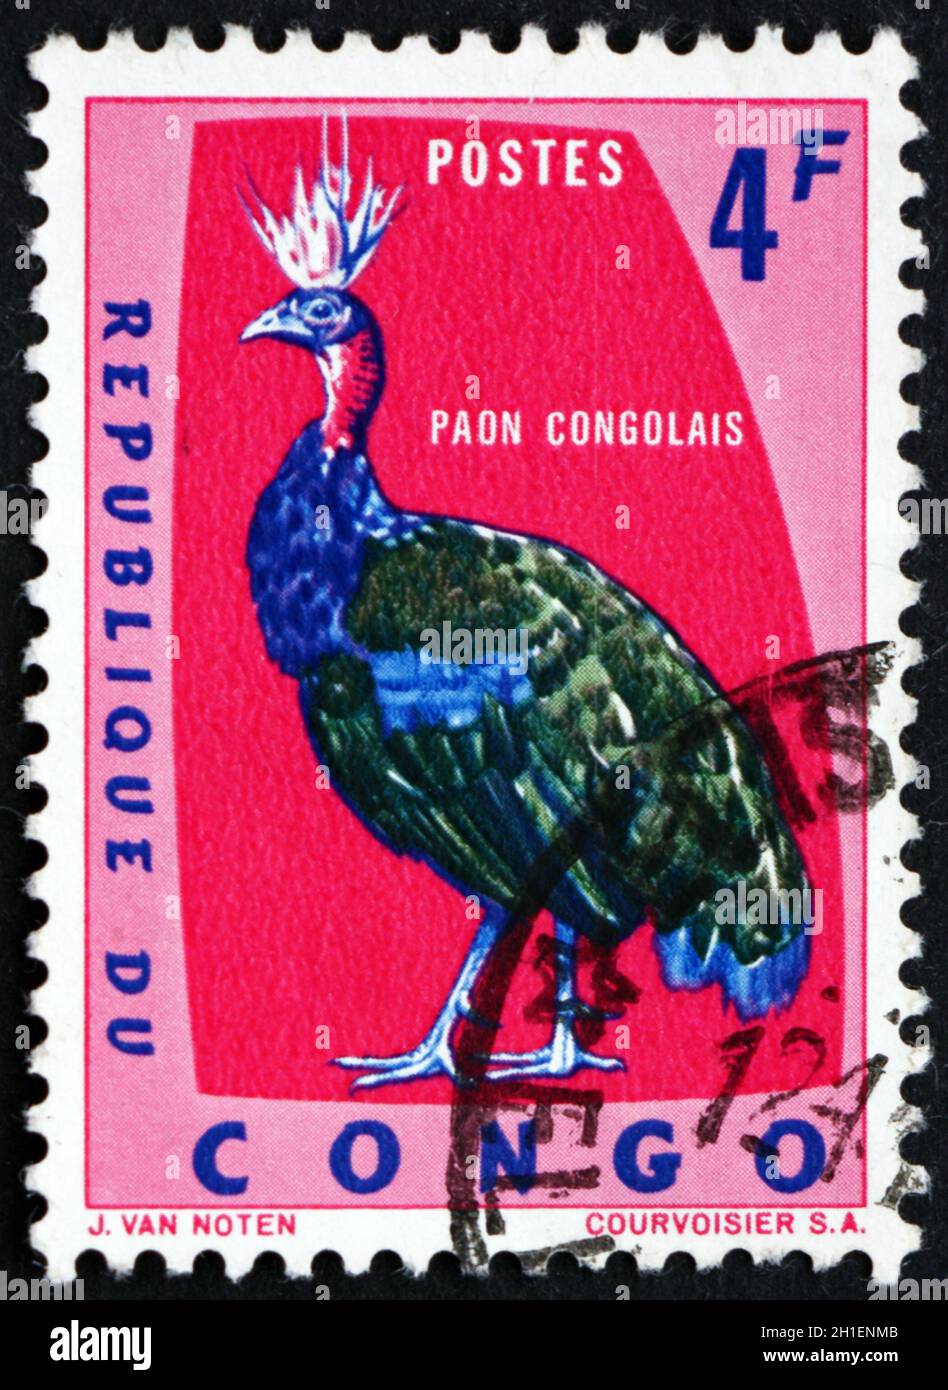 KONGO - UM 1963: Eine in Kongo gedruckte Marke zeigt den kongolesischen Pfau, Afropavo Congensis, eine im Kongo-Becken heimische Art von Peafowl, um 196 Stockfoto